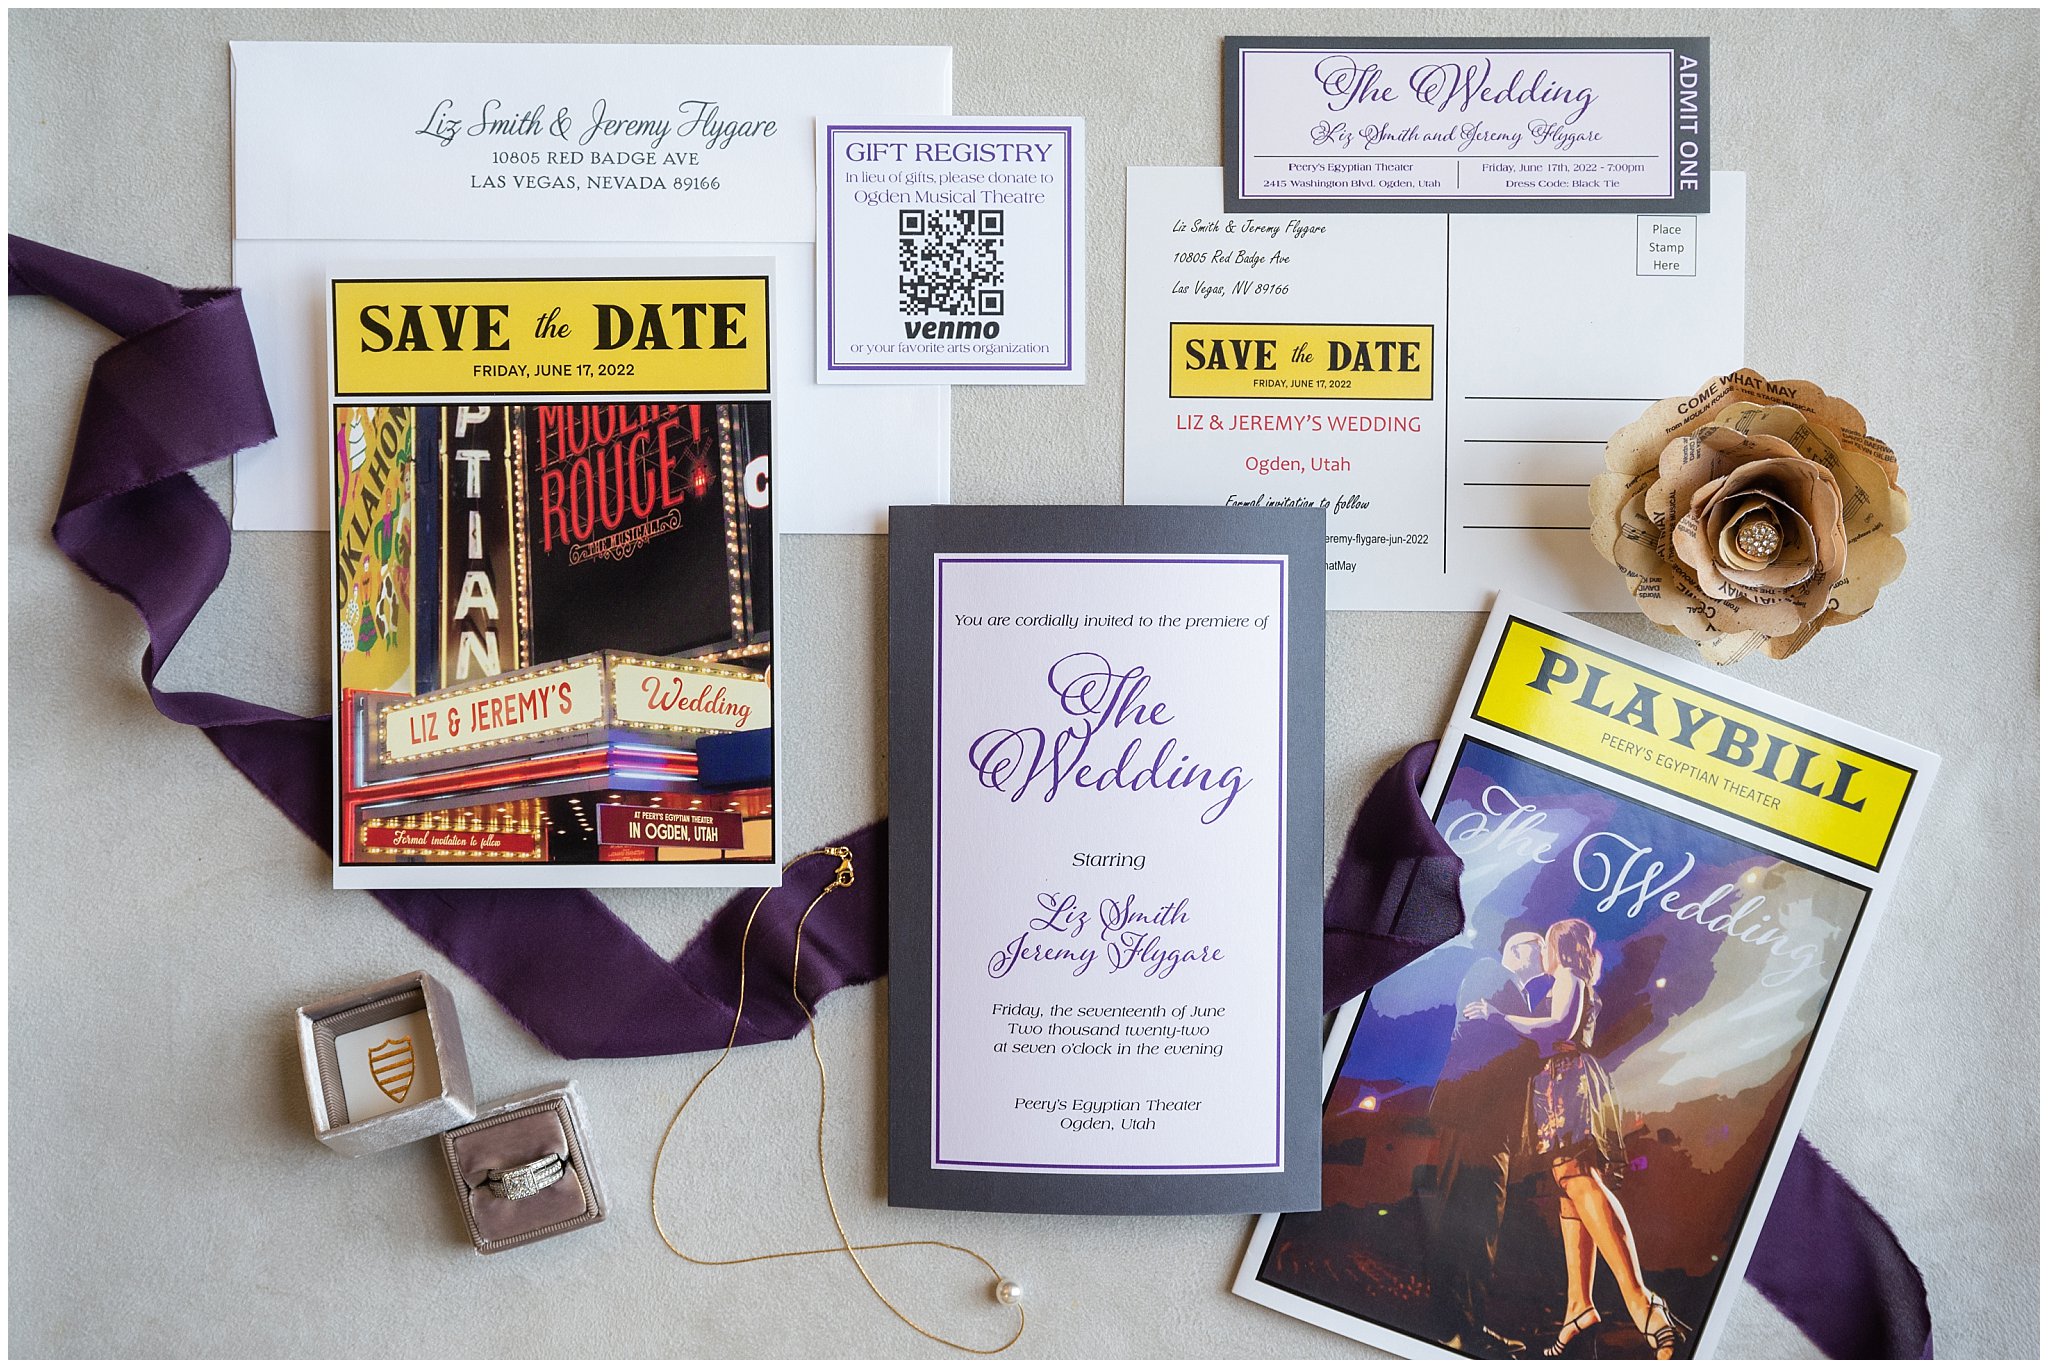 Wedding details | Broadway Musical Theatre Wedding